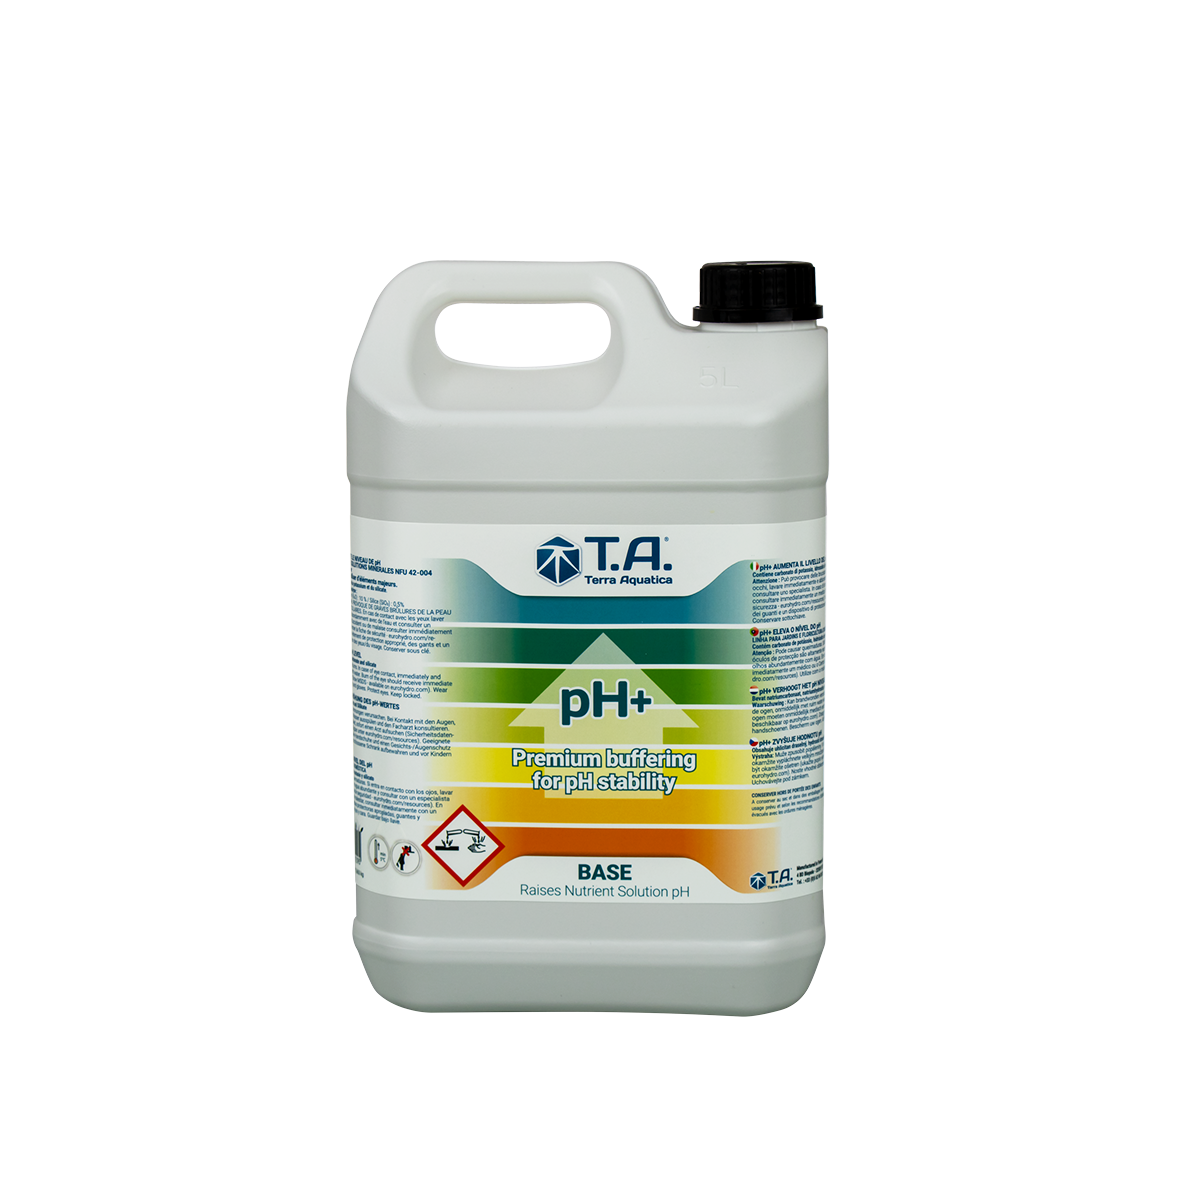 Solution pH Terra Aquatica PH+ up 5 litres